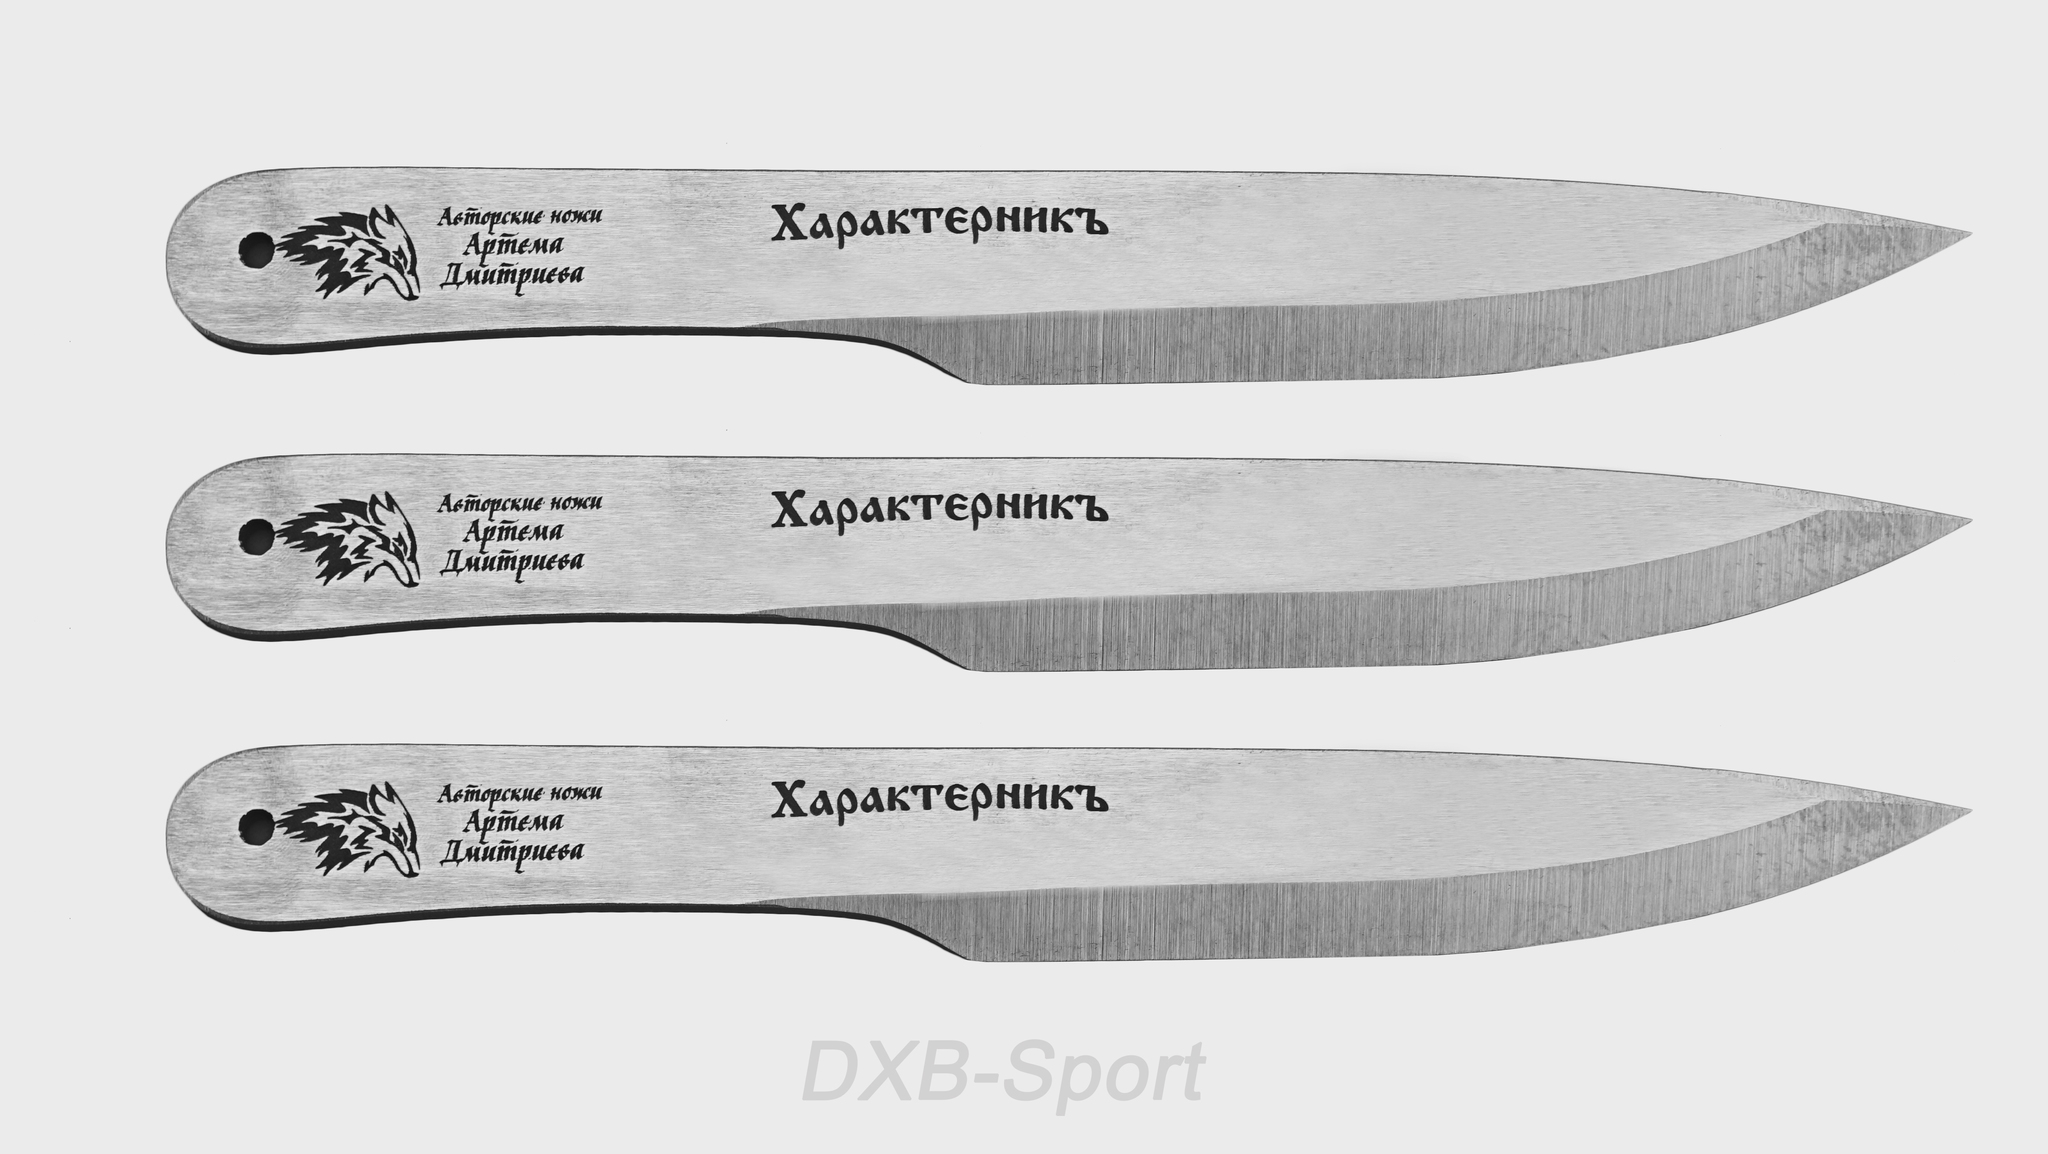 Метательные ножи. Метание ножей: техника и правила.